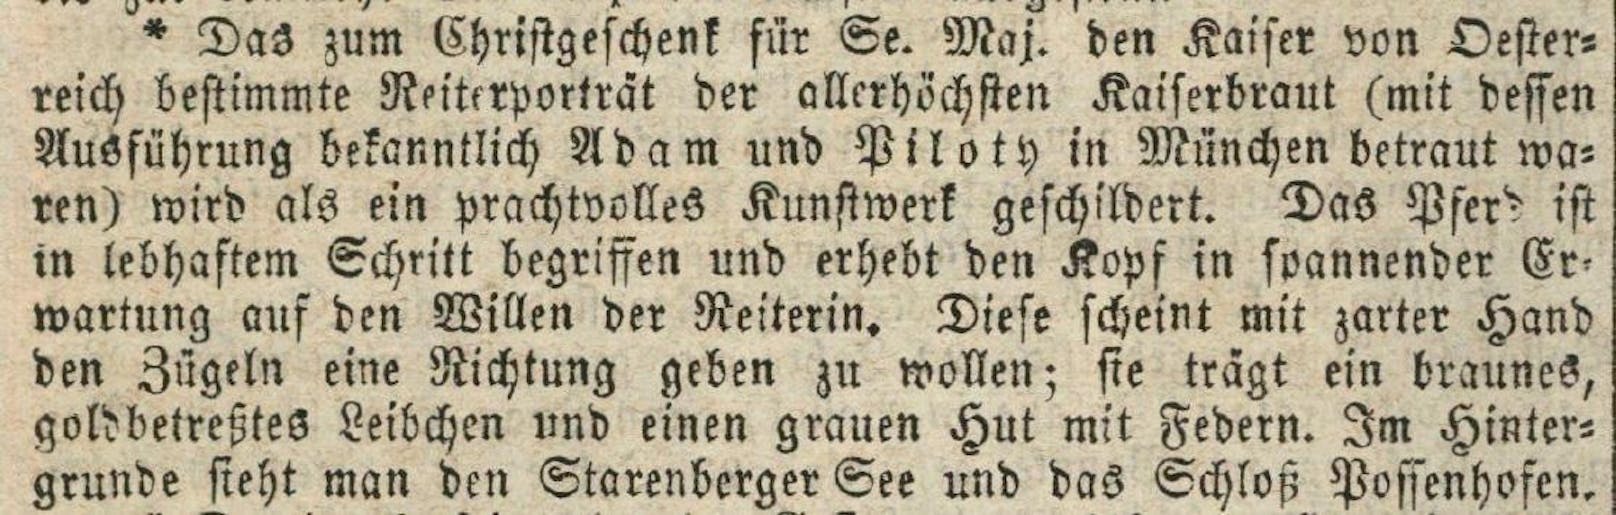 Fremden-Blatt, 29. Dezember 1853, 7. Jahrgang, Nr. 308, Tages-Neuigkeiten, S. 2.: Das "Chistgeschenk" des Kaisers wird beschrieben